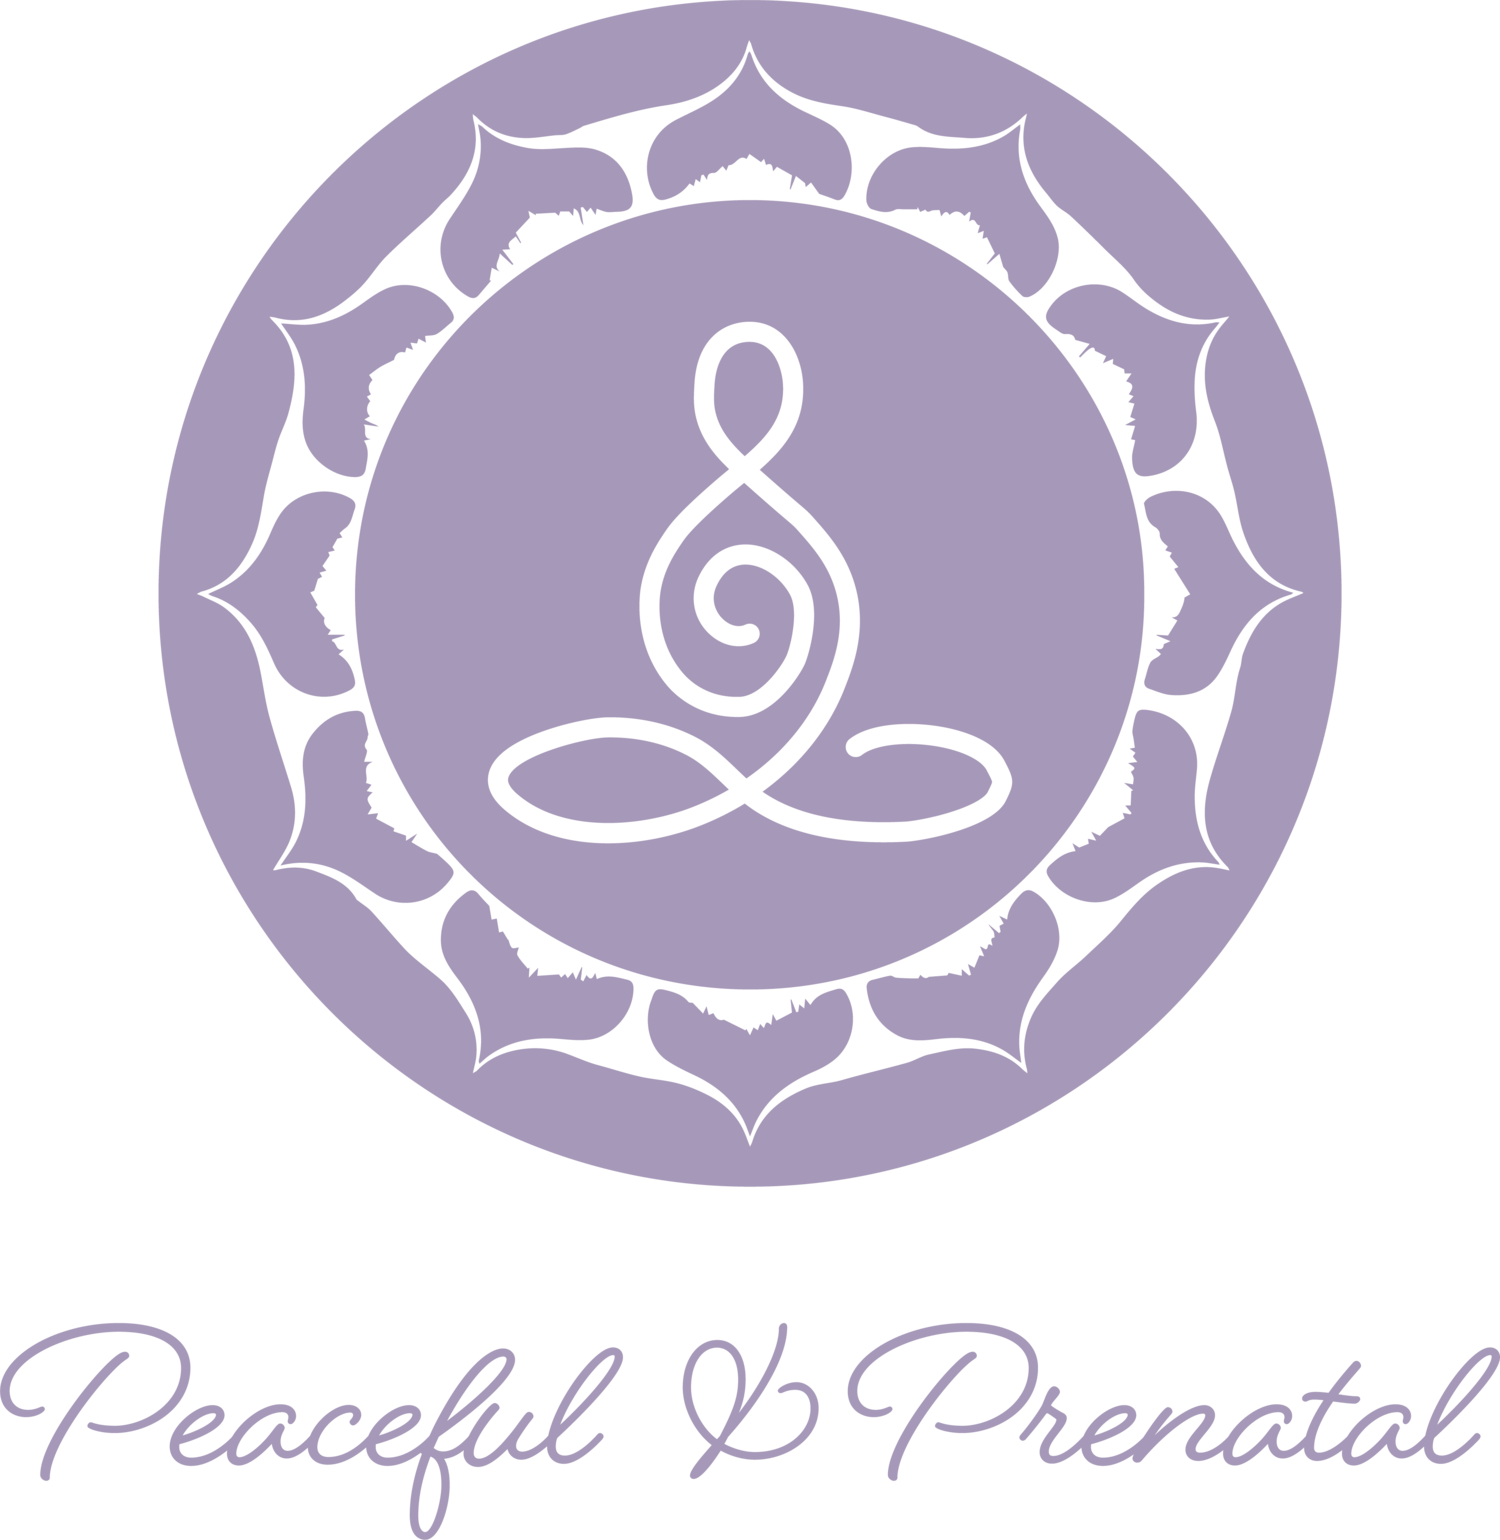 Peaceful and Prenatal 